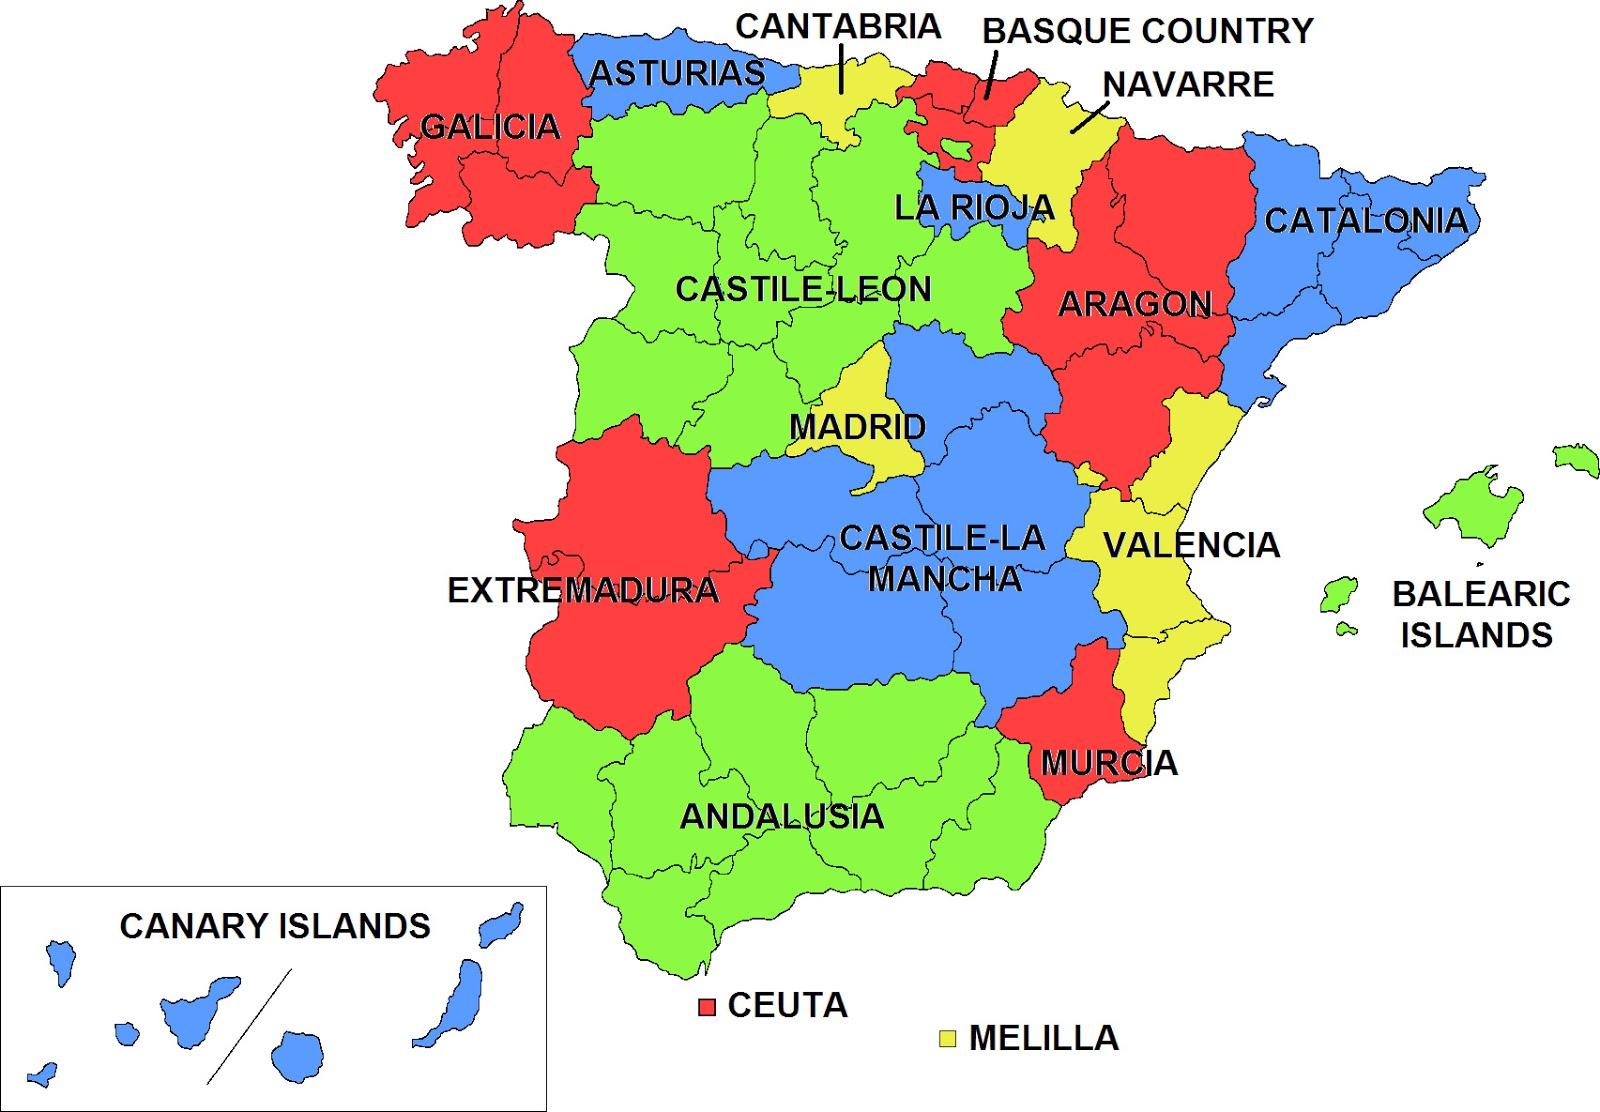 regioner i spanien kort Spanien Regioner Kort Kort Over Spanien Og Regioner Sydlige Europa Europa regioner i spanien kort